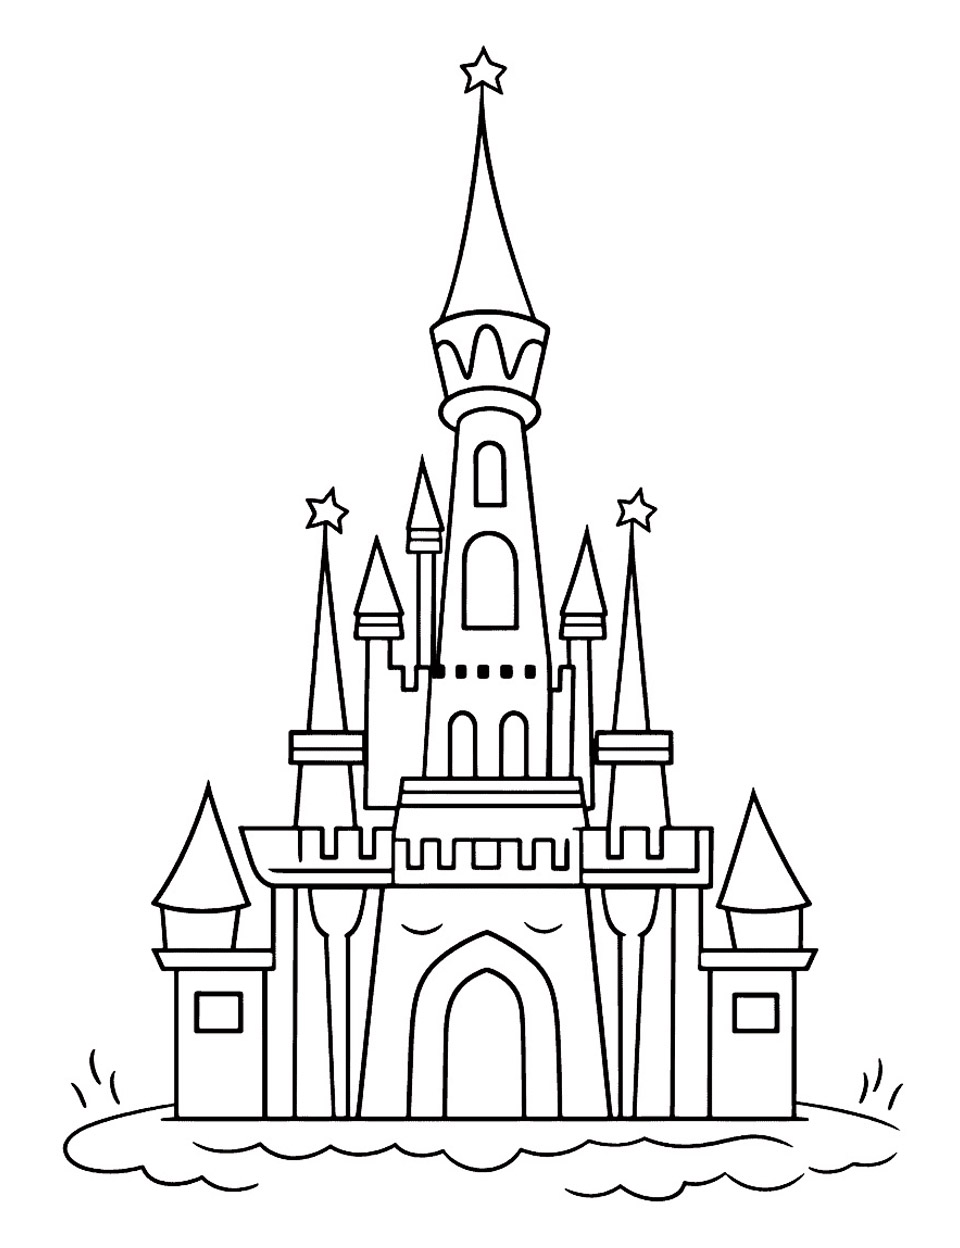 Dessin simple d'un château de conte de fées. Ce chateau est une version simplifiée et inspirée du chateau de La Belle au bois dormant